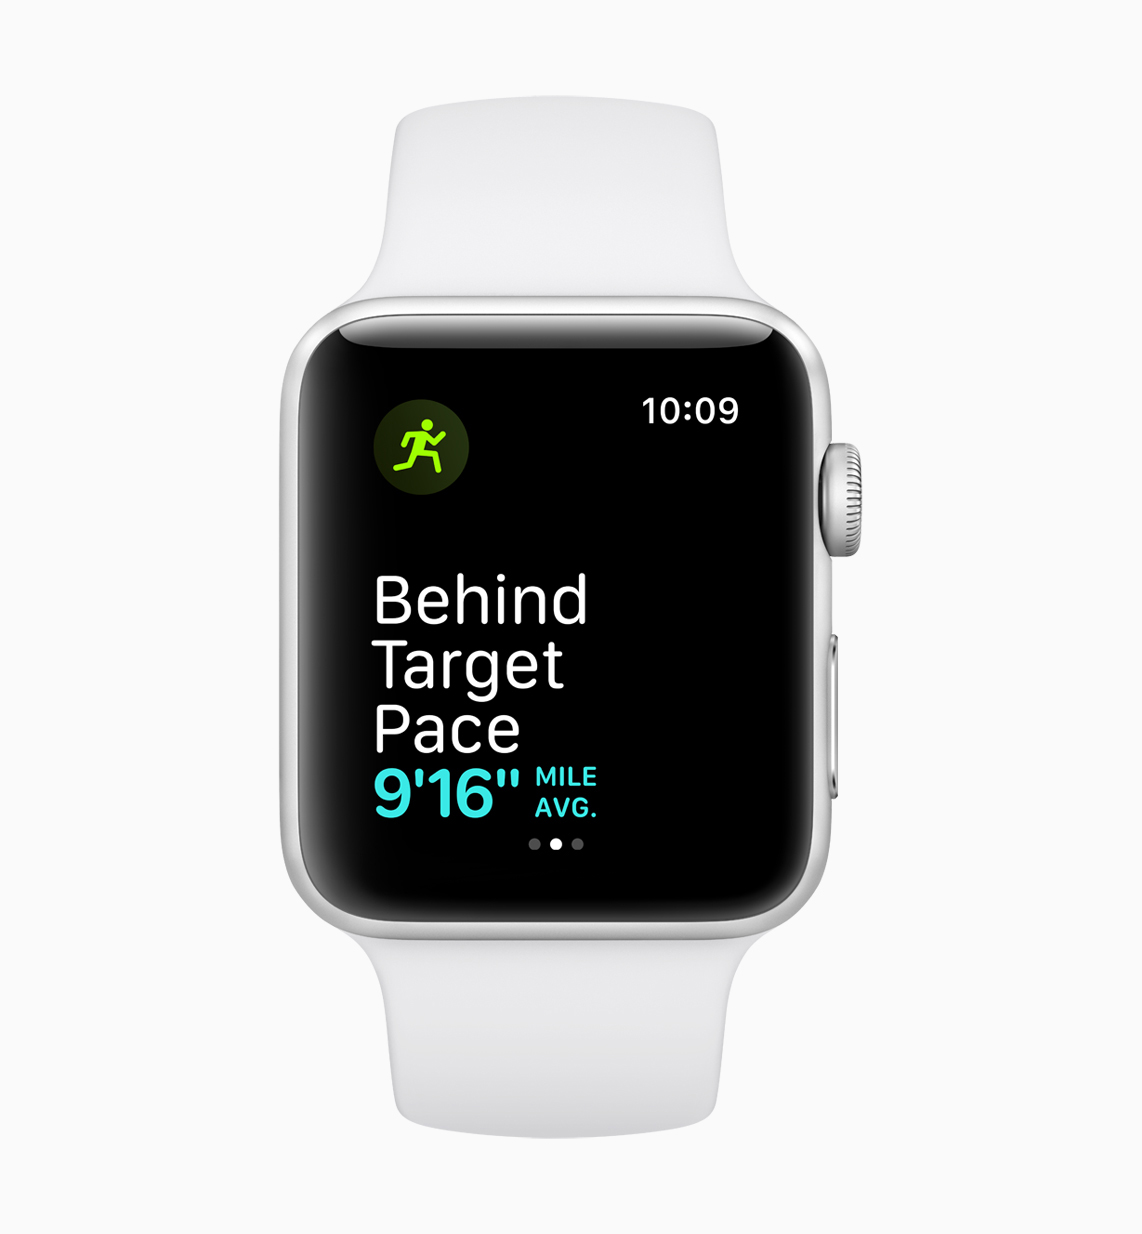 apple watchos 5 running features 02 screen 06042018